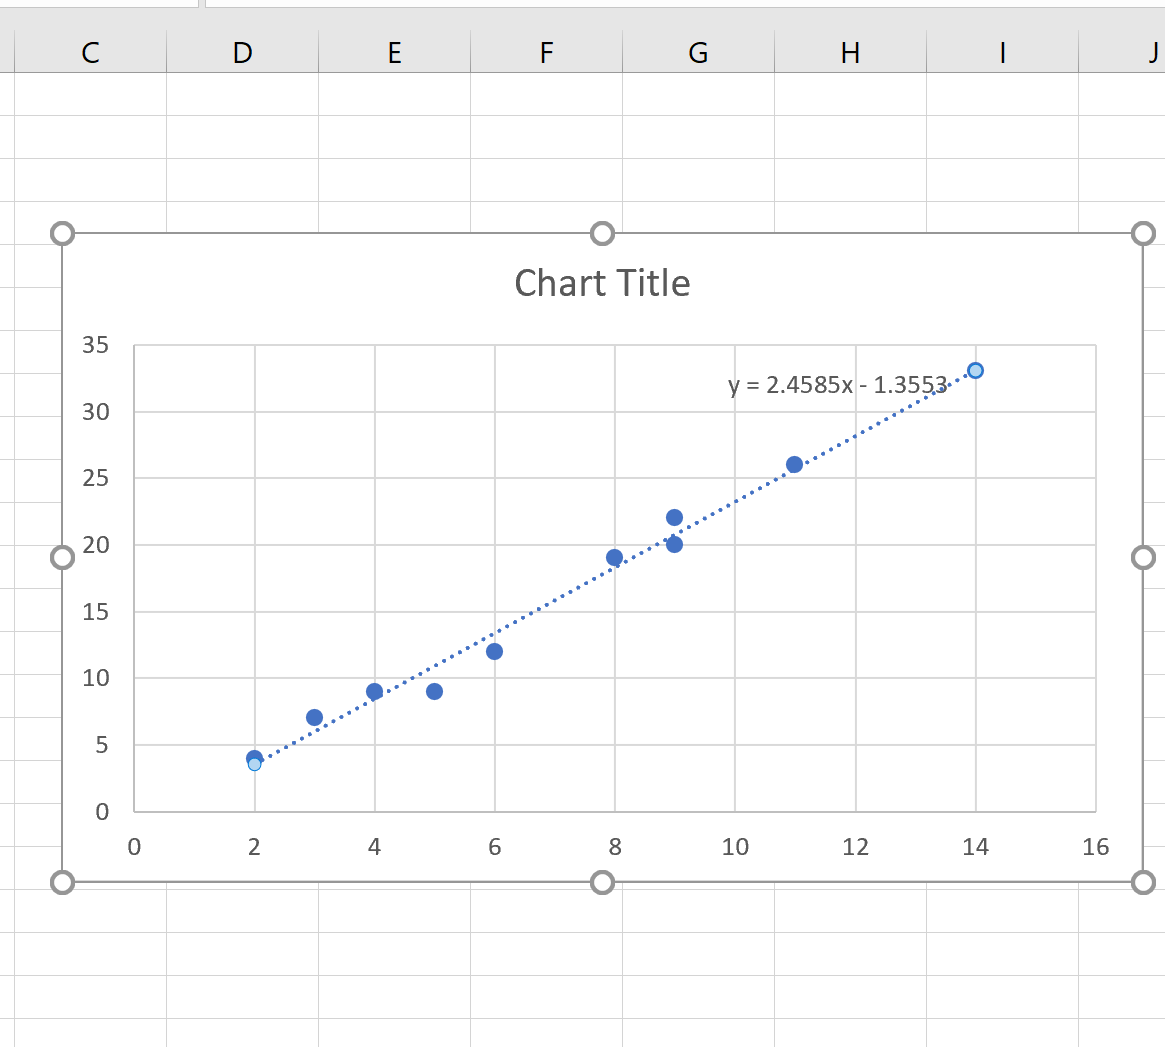 Slope of trendline in Excel